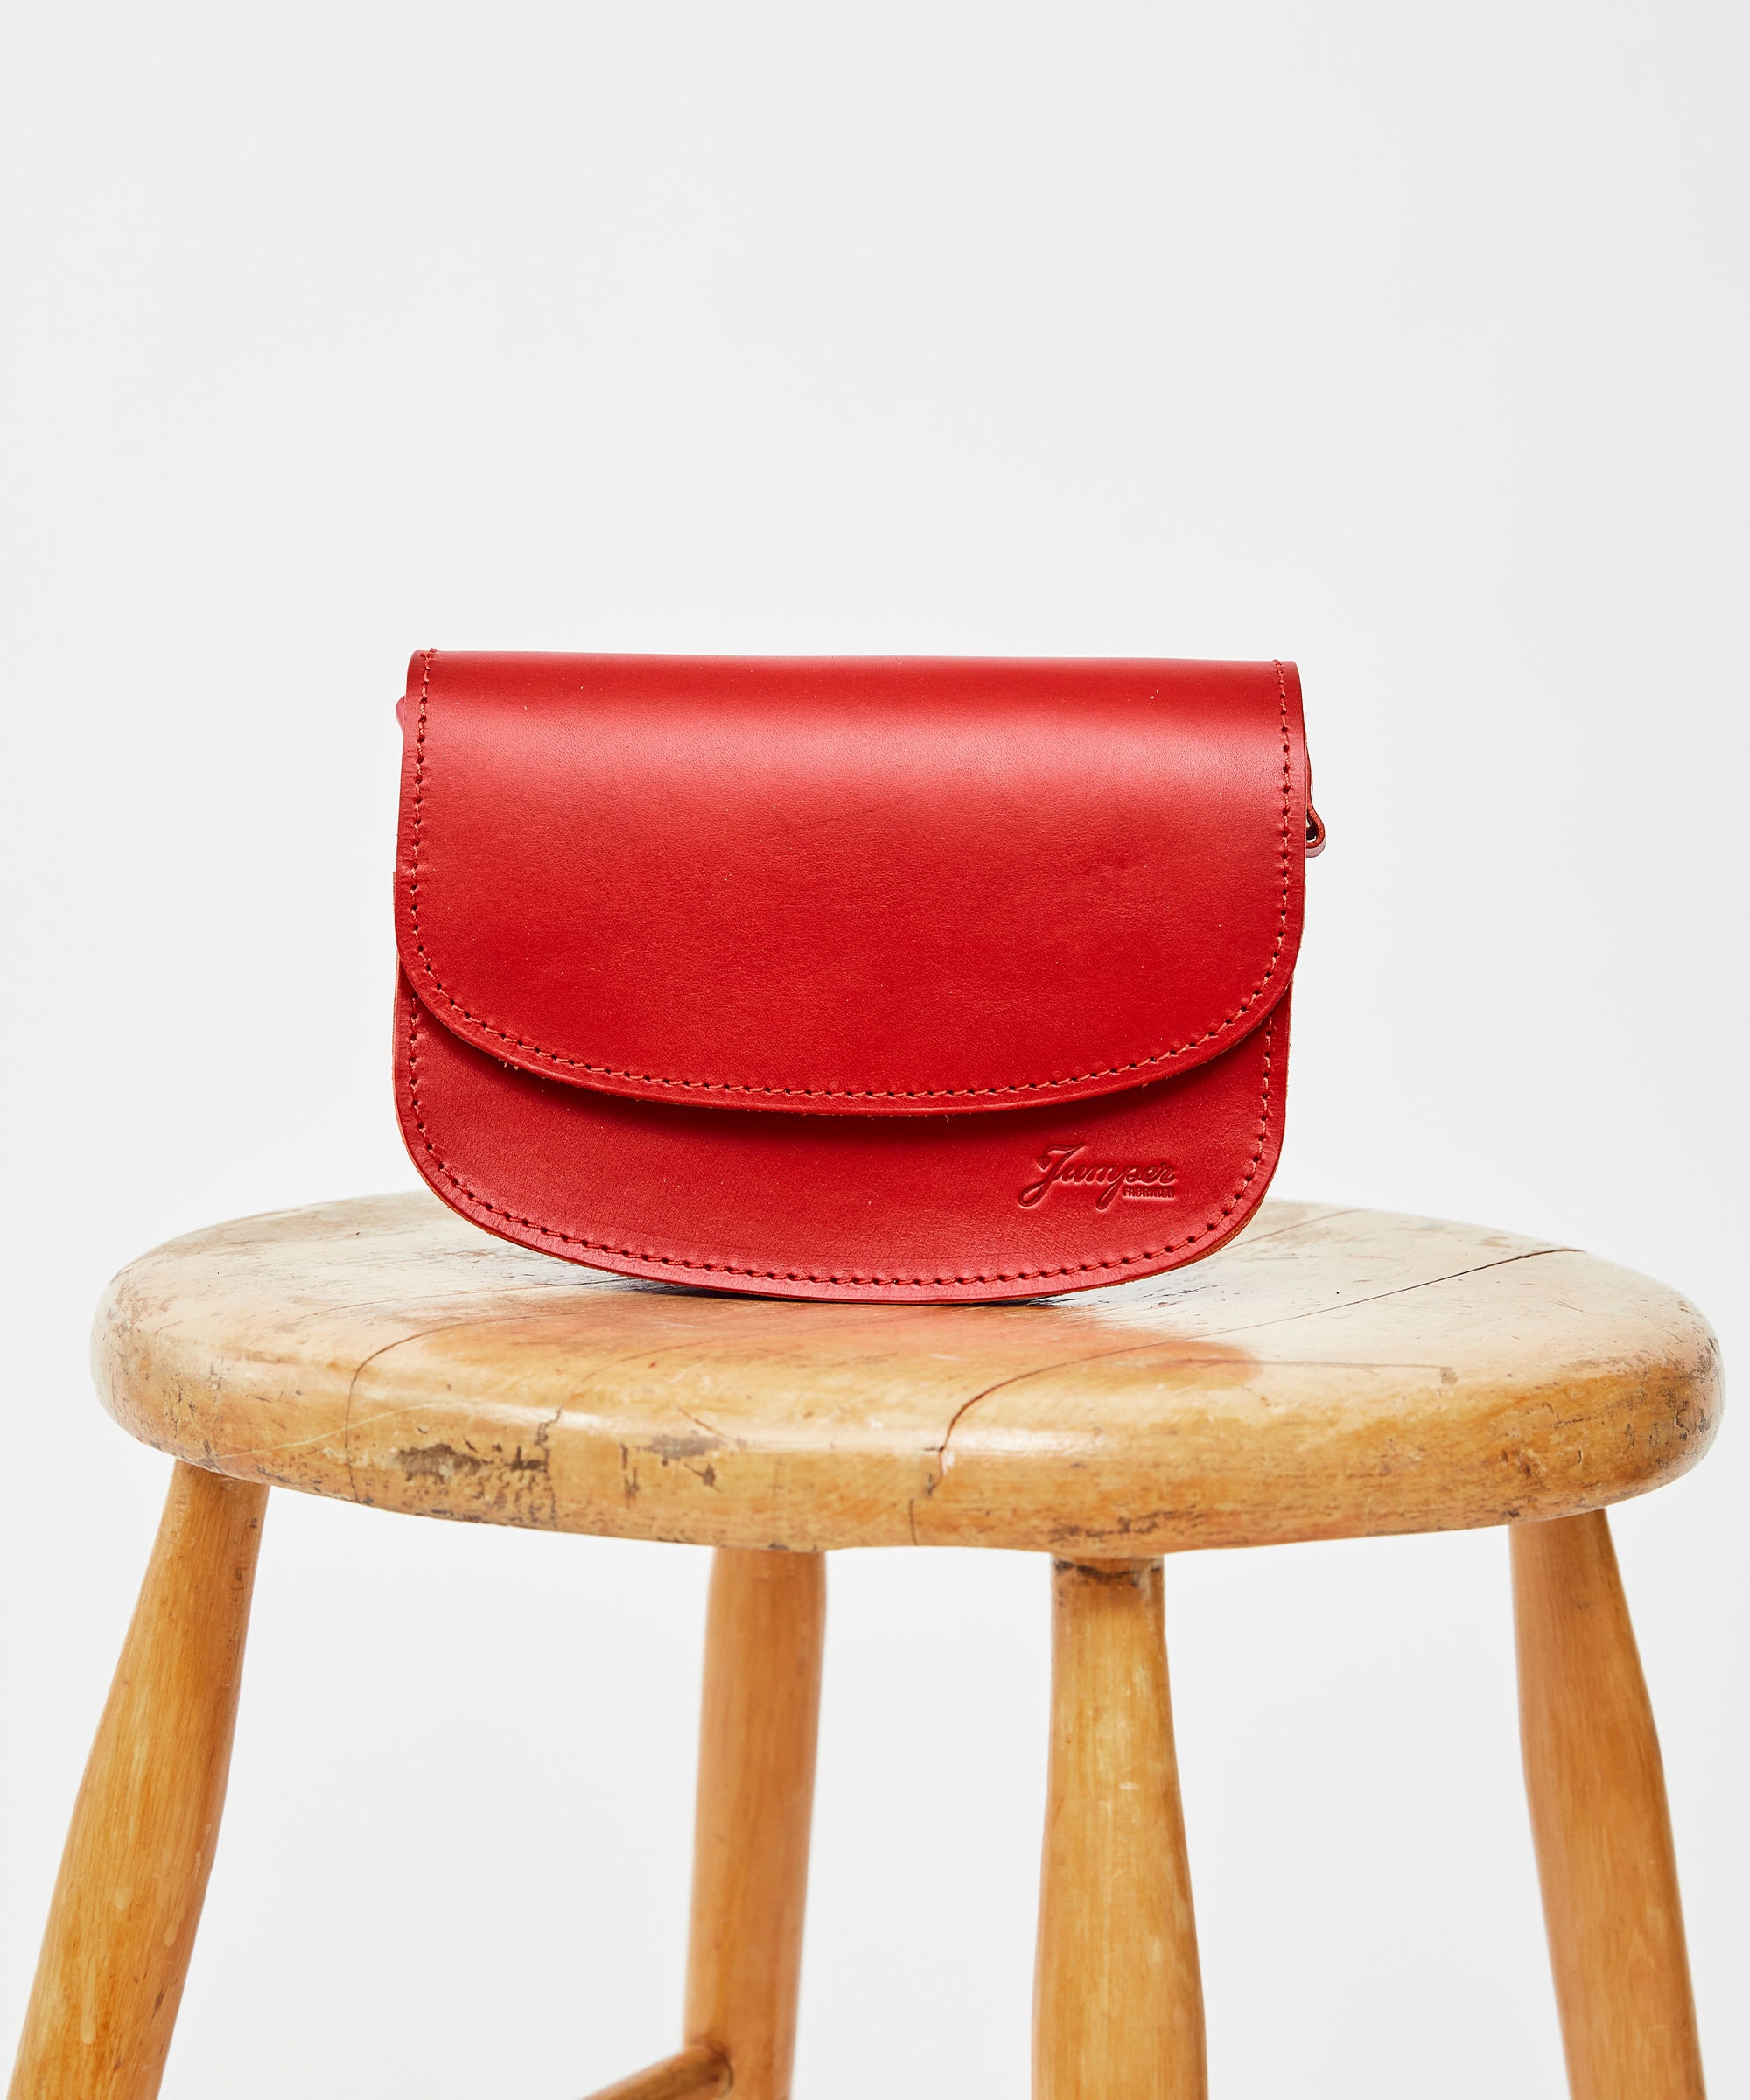 Bag satchel Red